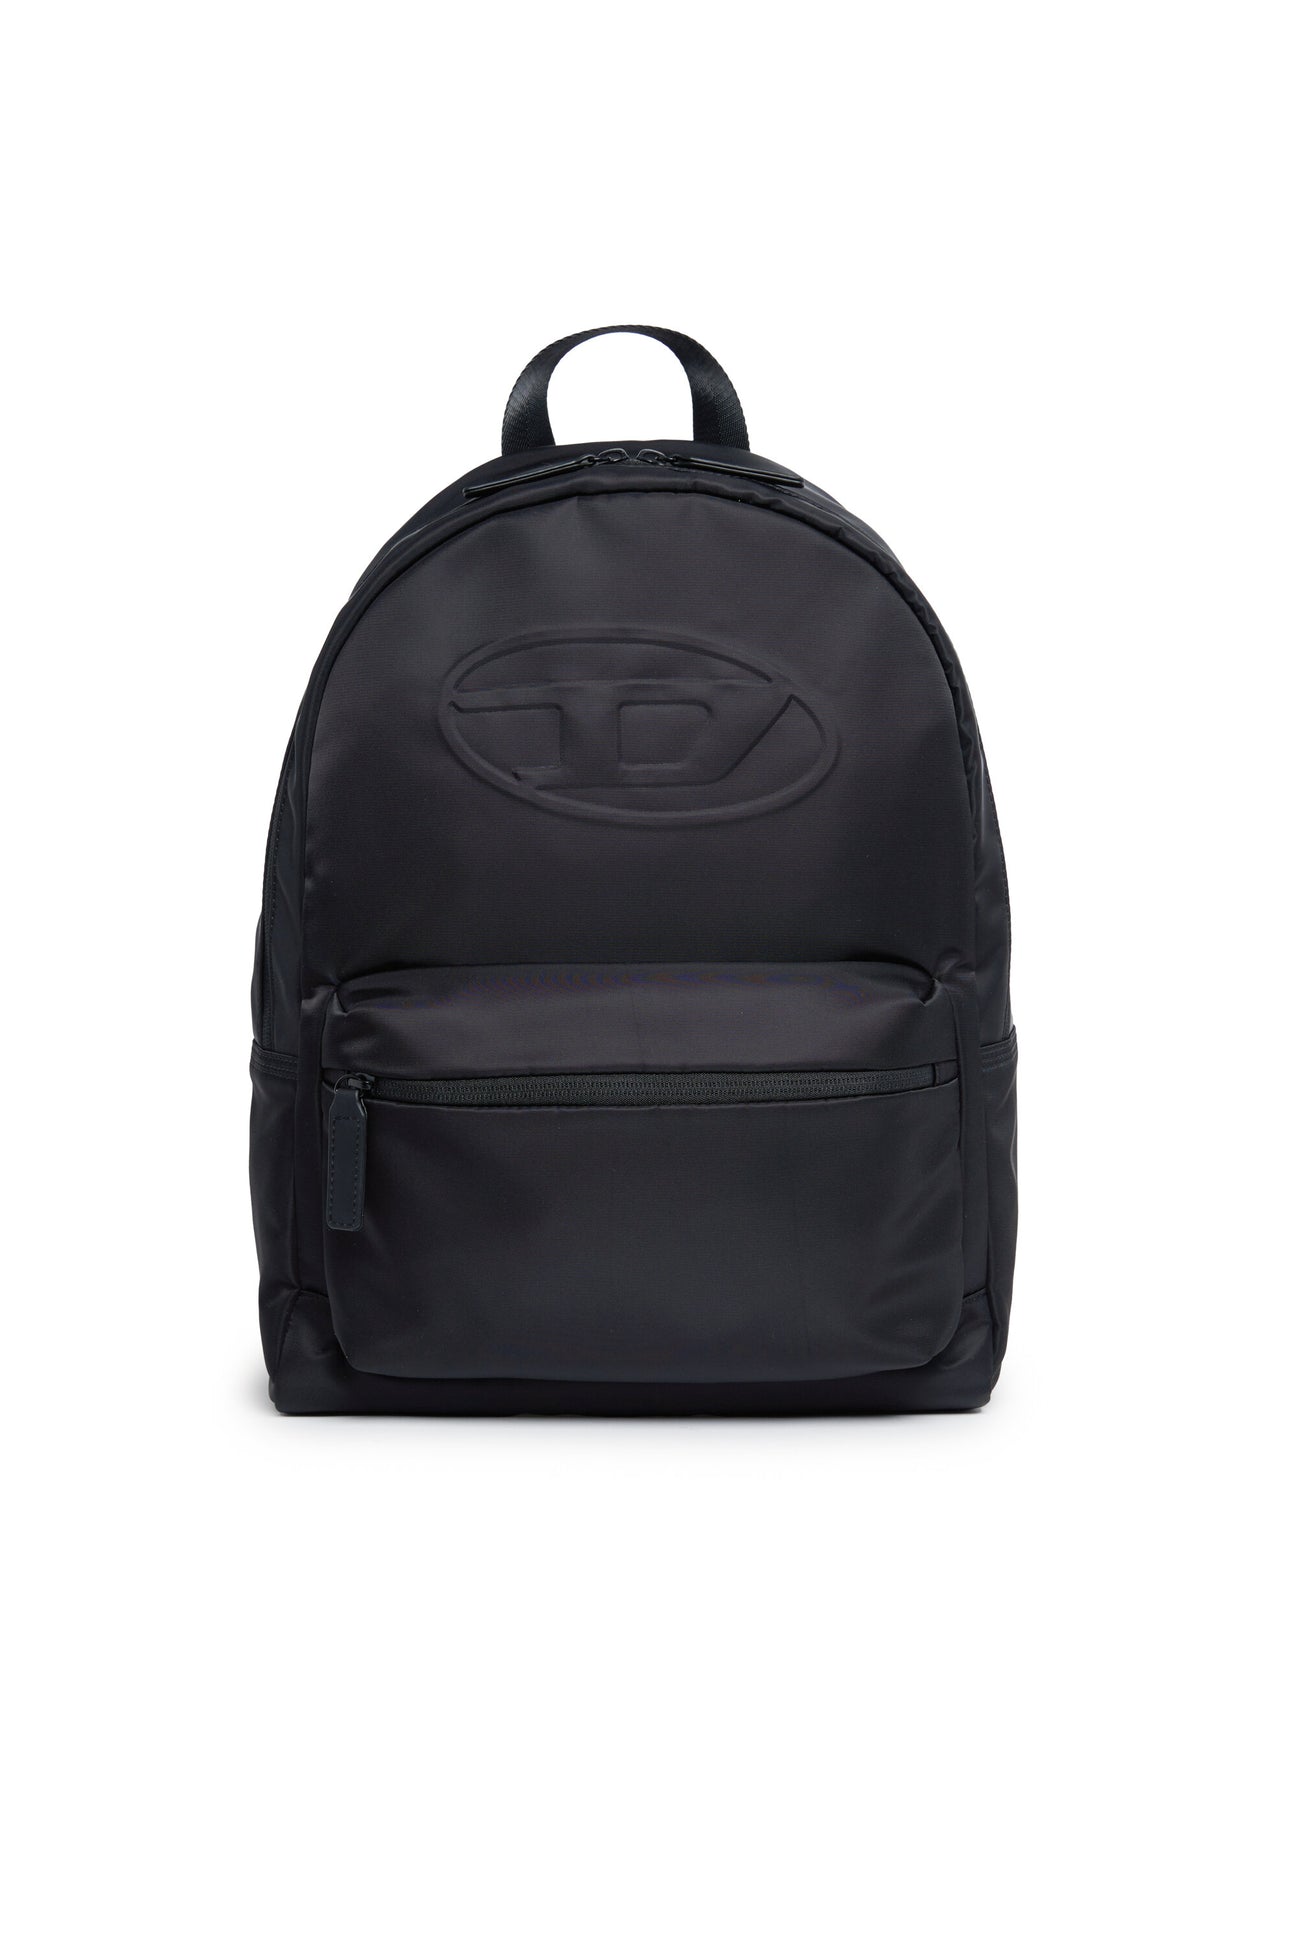 Oval D branded backpack 